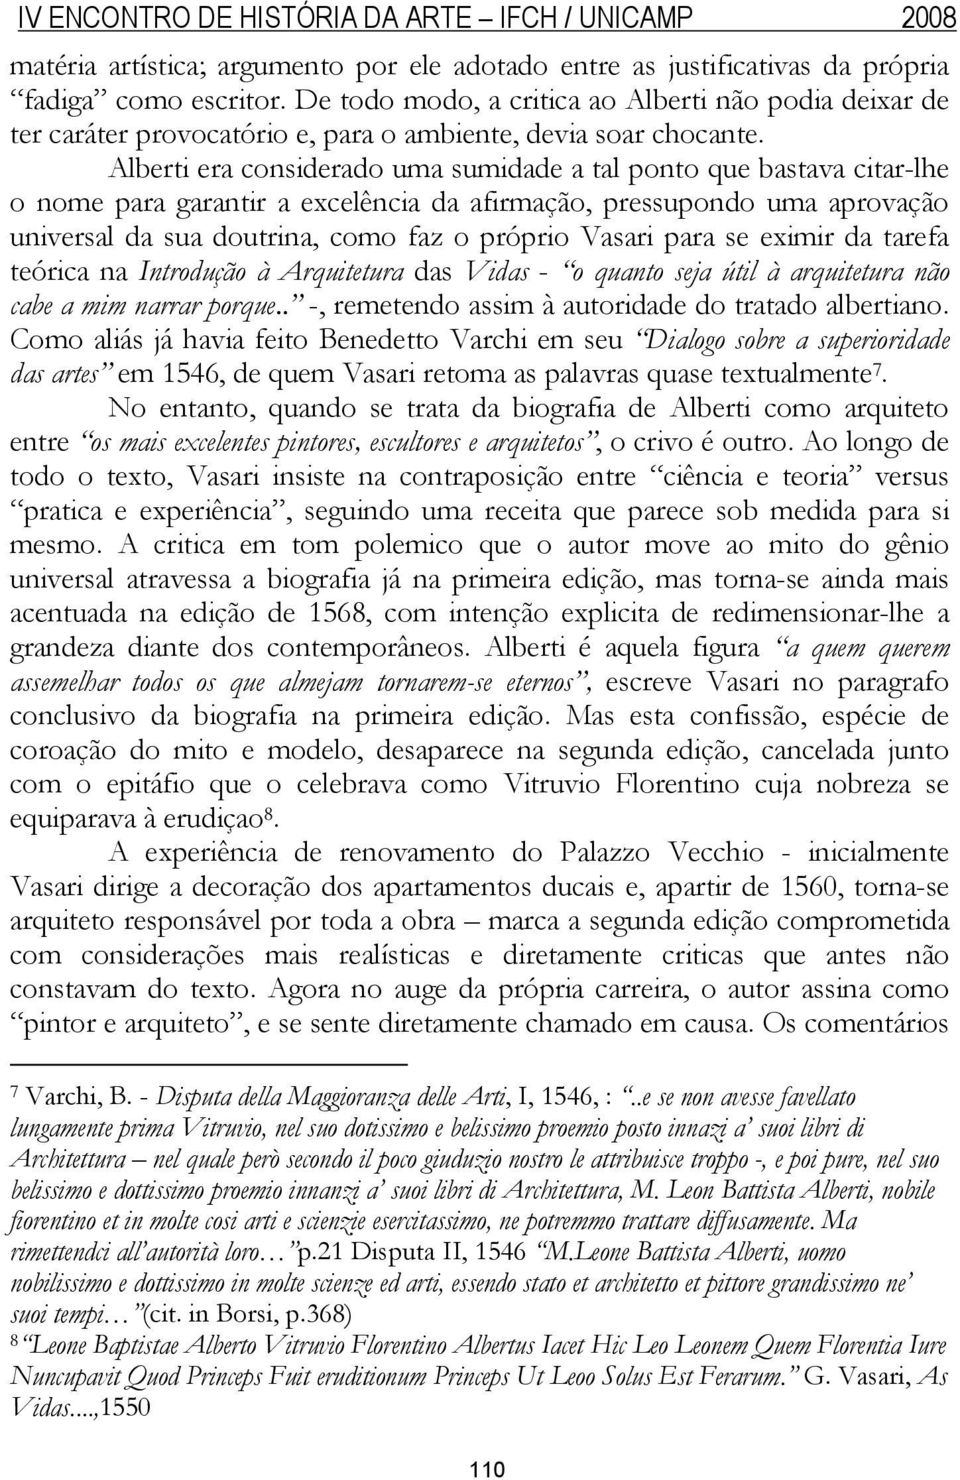 Alberti era considerado uma sumidade a tal ponto que bastava citar-lhe o nome para garantir a excelência da afirmação, pressupondo uma aprovação universal da sua doutrina, como faz o próprio Vasari